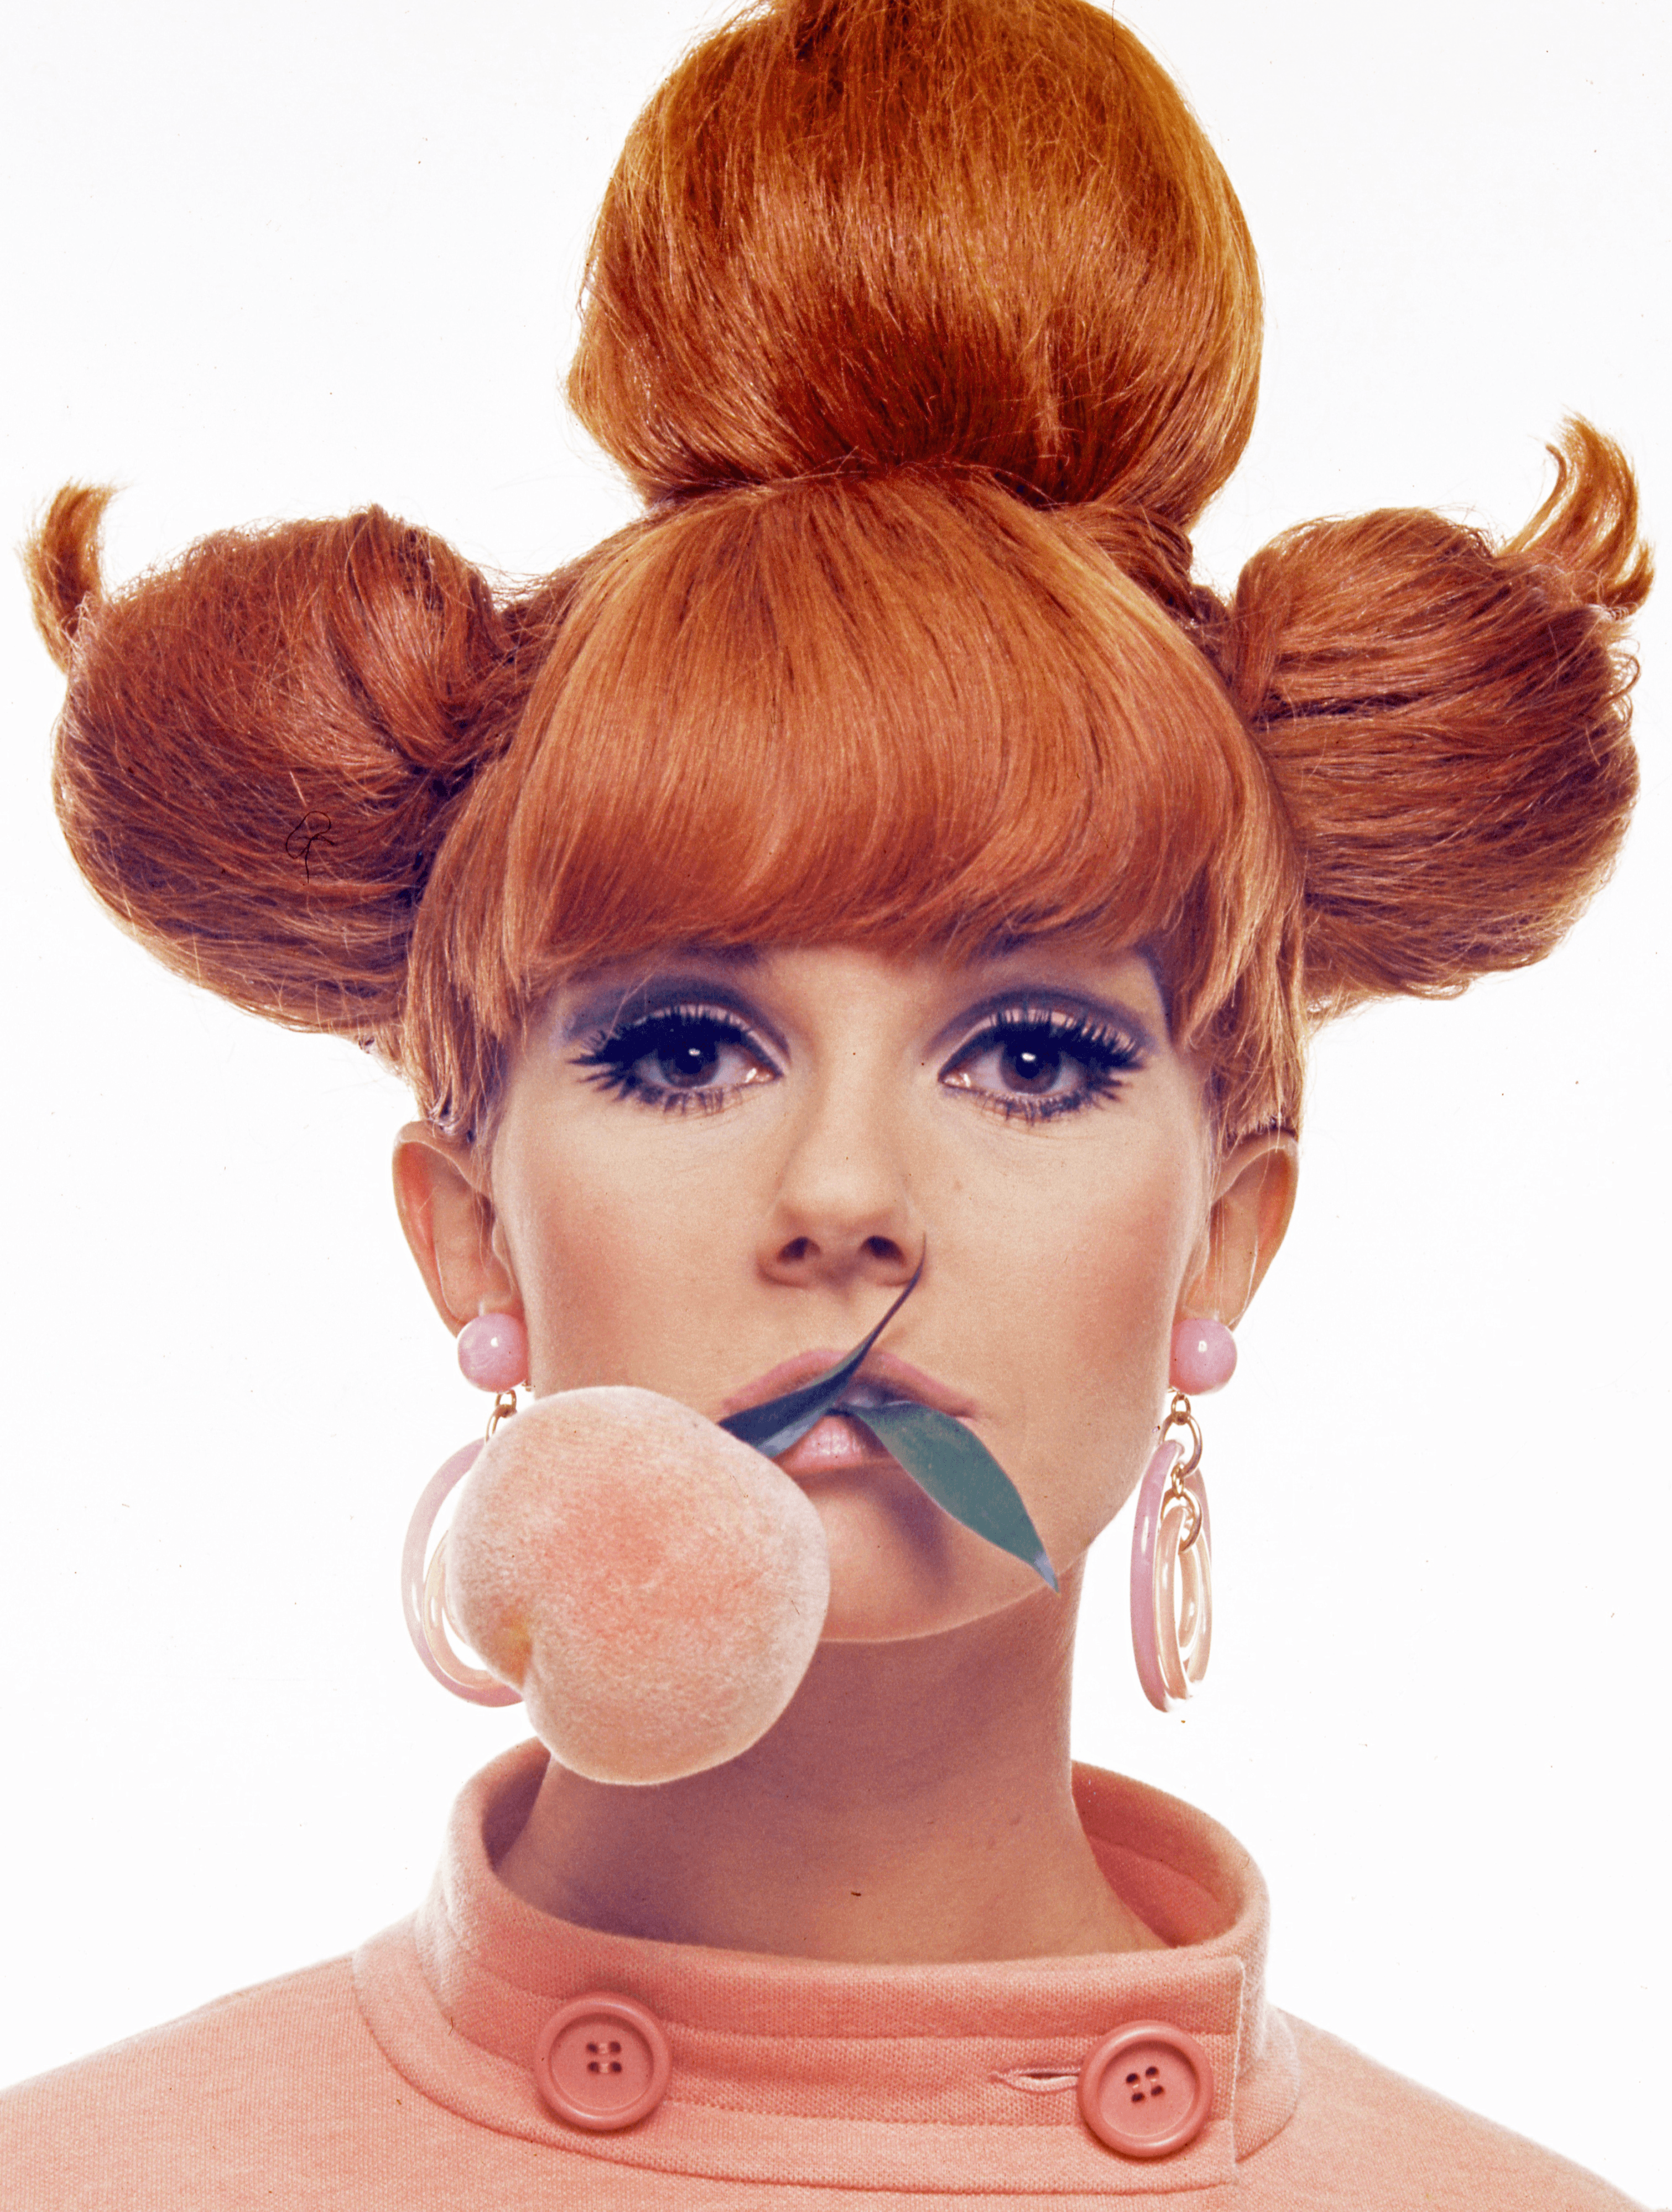 Vogue Paris, February 1966